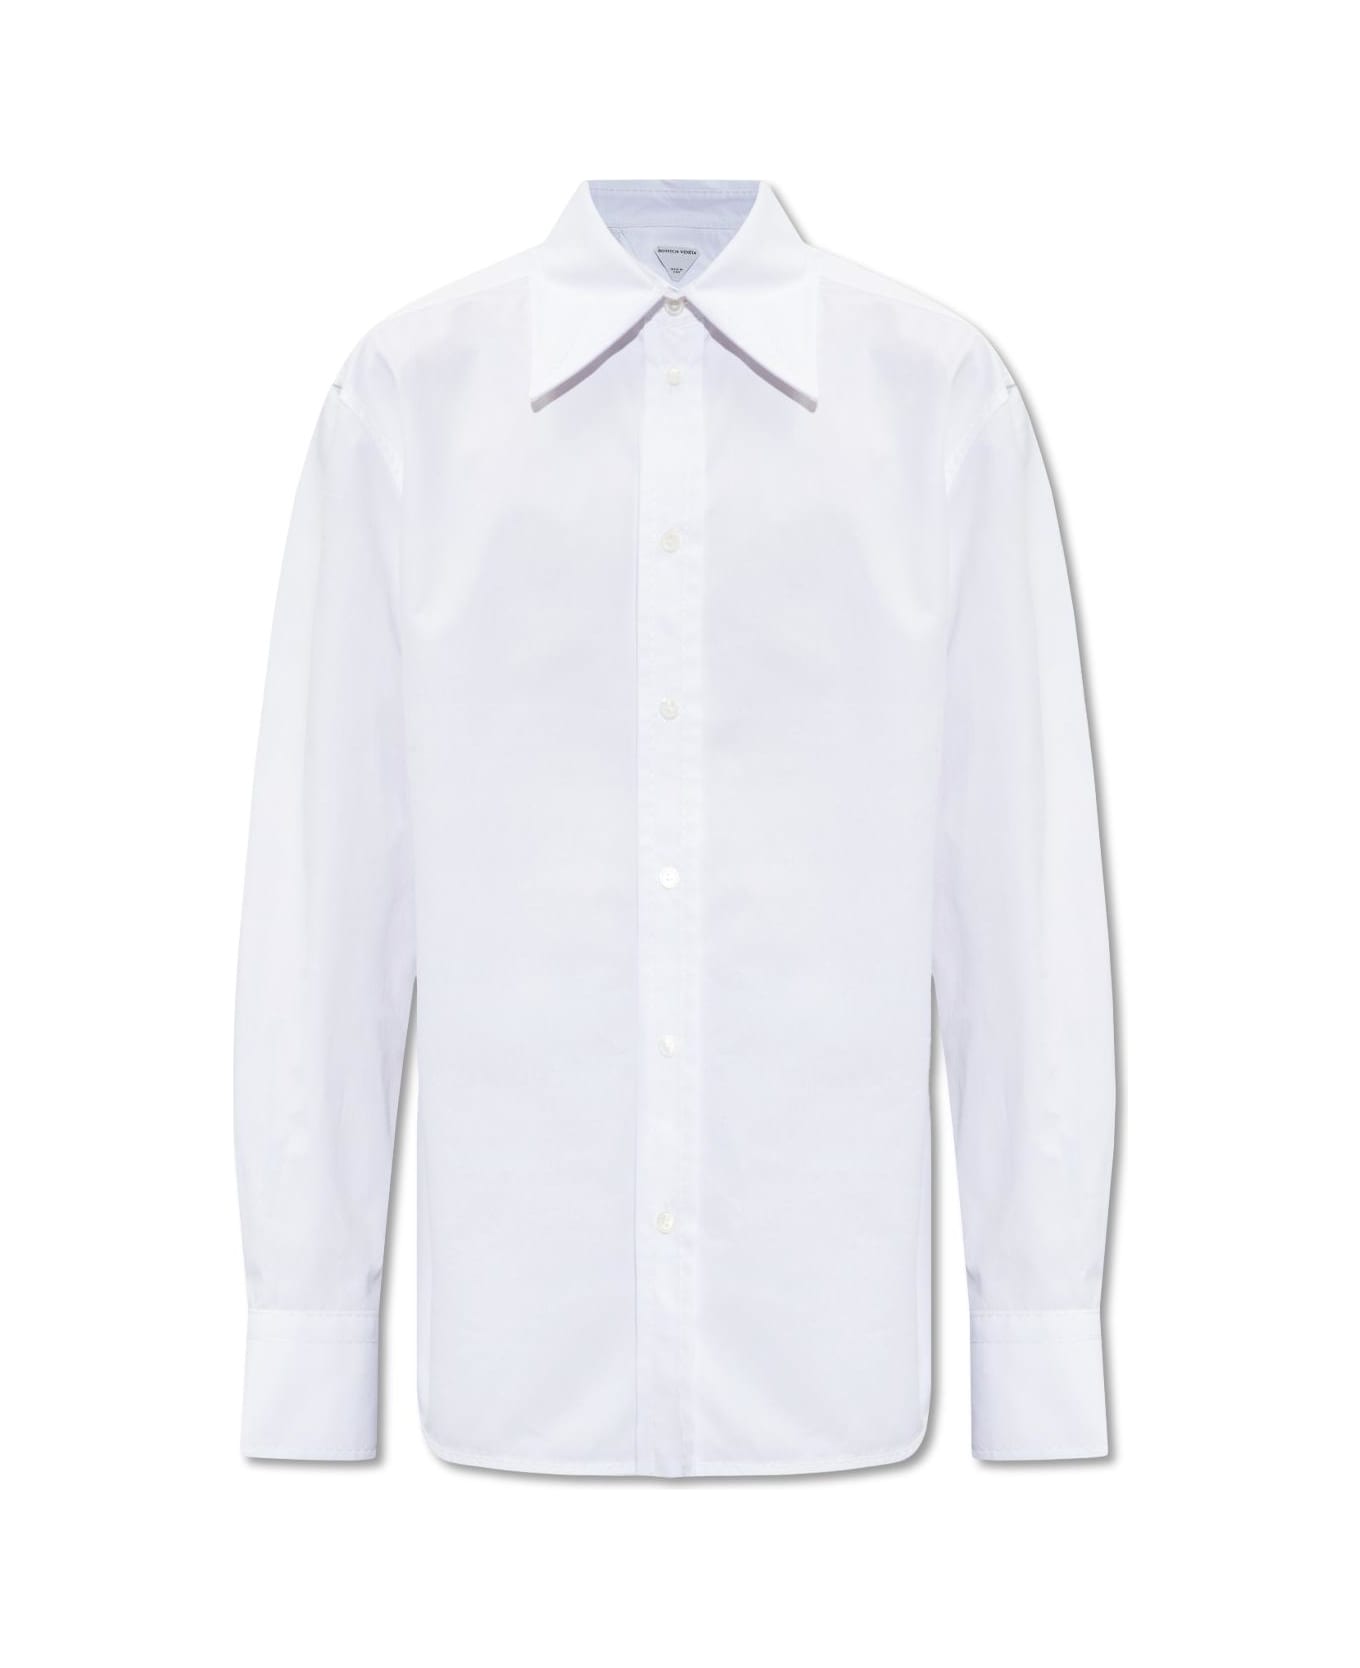 Bottega Veneta Shirt With Stitching - WHITE